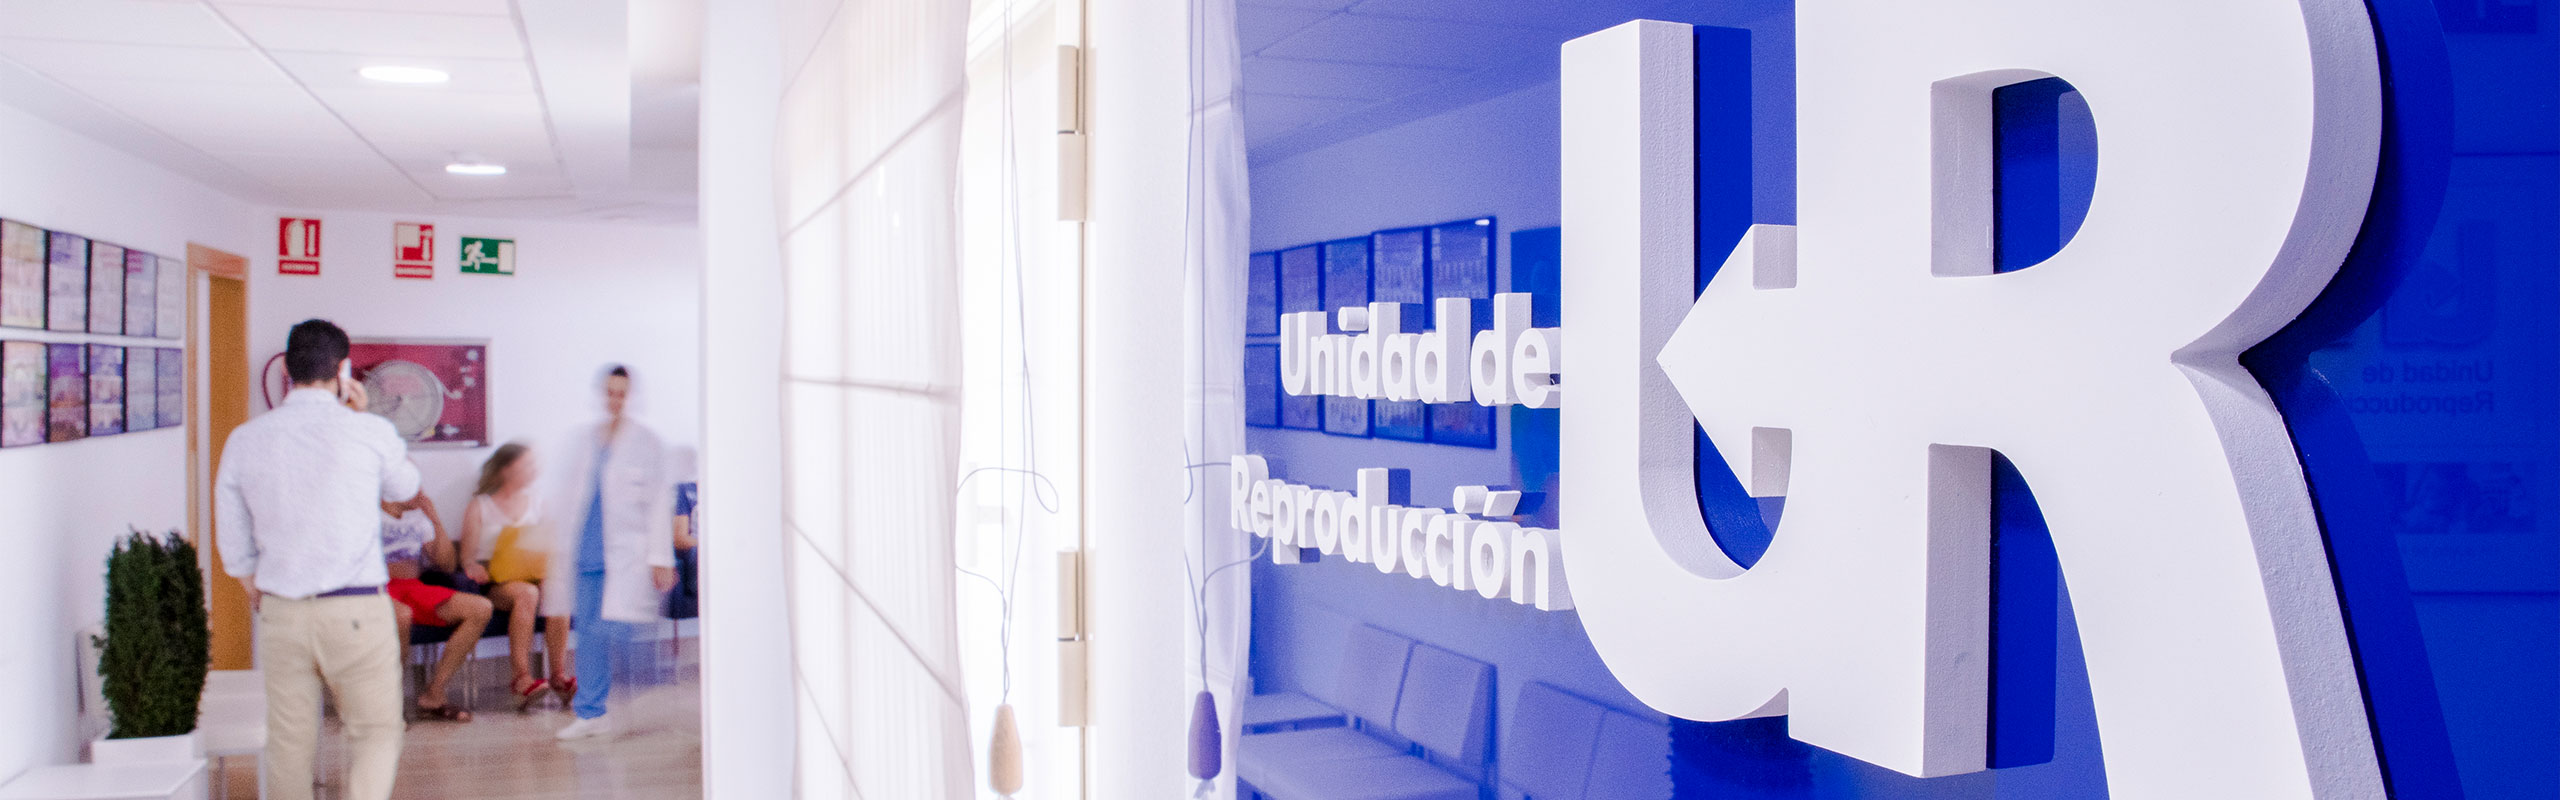 El Grupo UR Internacional celebra 40 años de Medicina Reproductiva en la V Reunión desde su sede central en UR Vistahermosa de Alicante